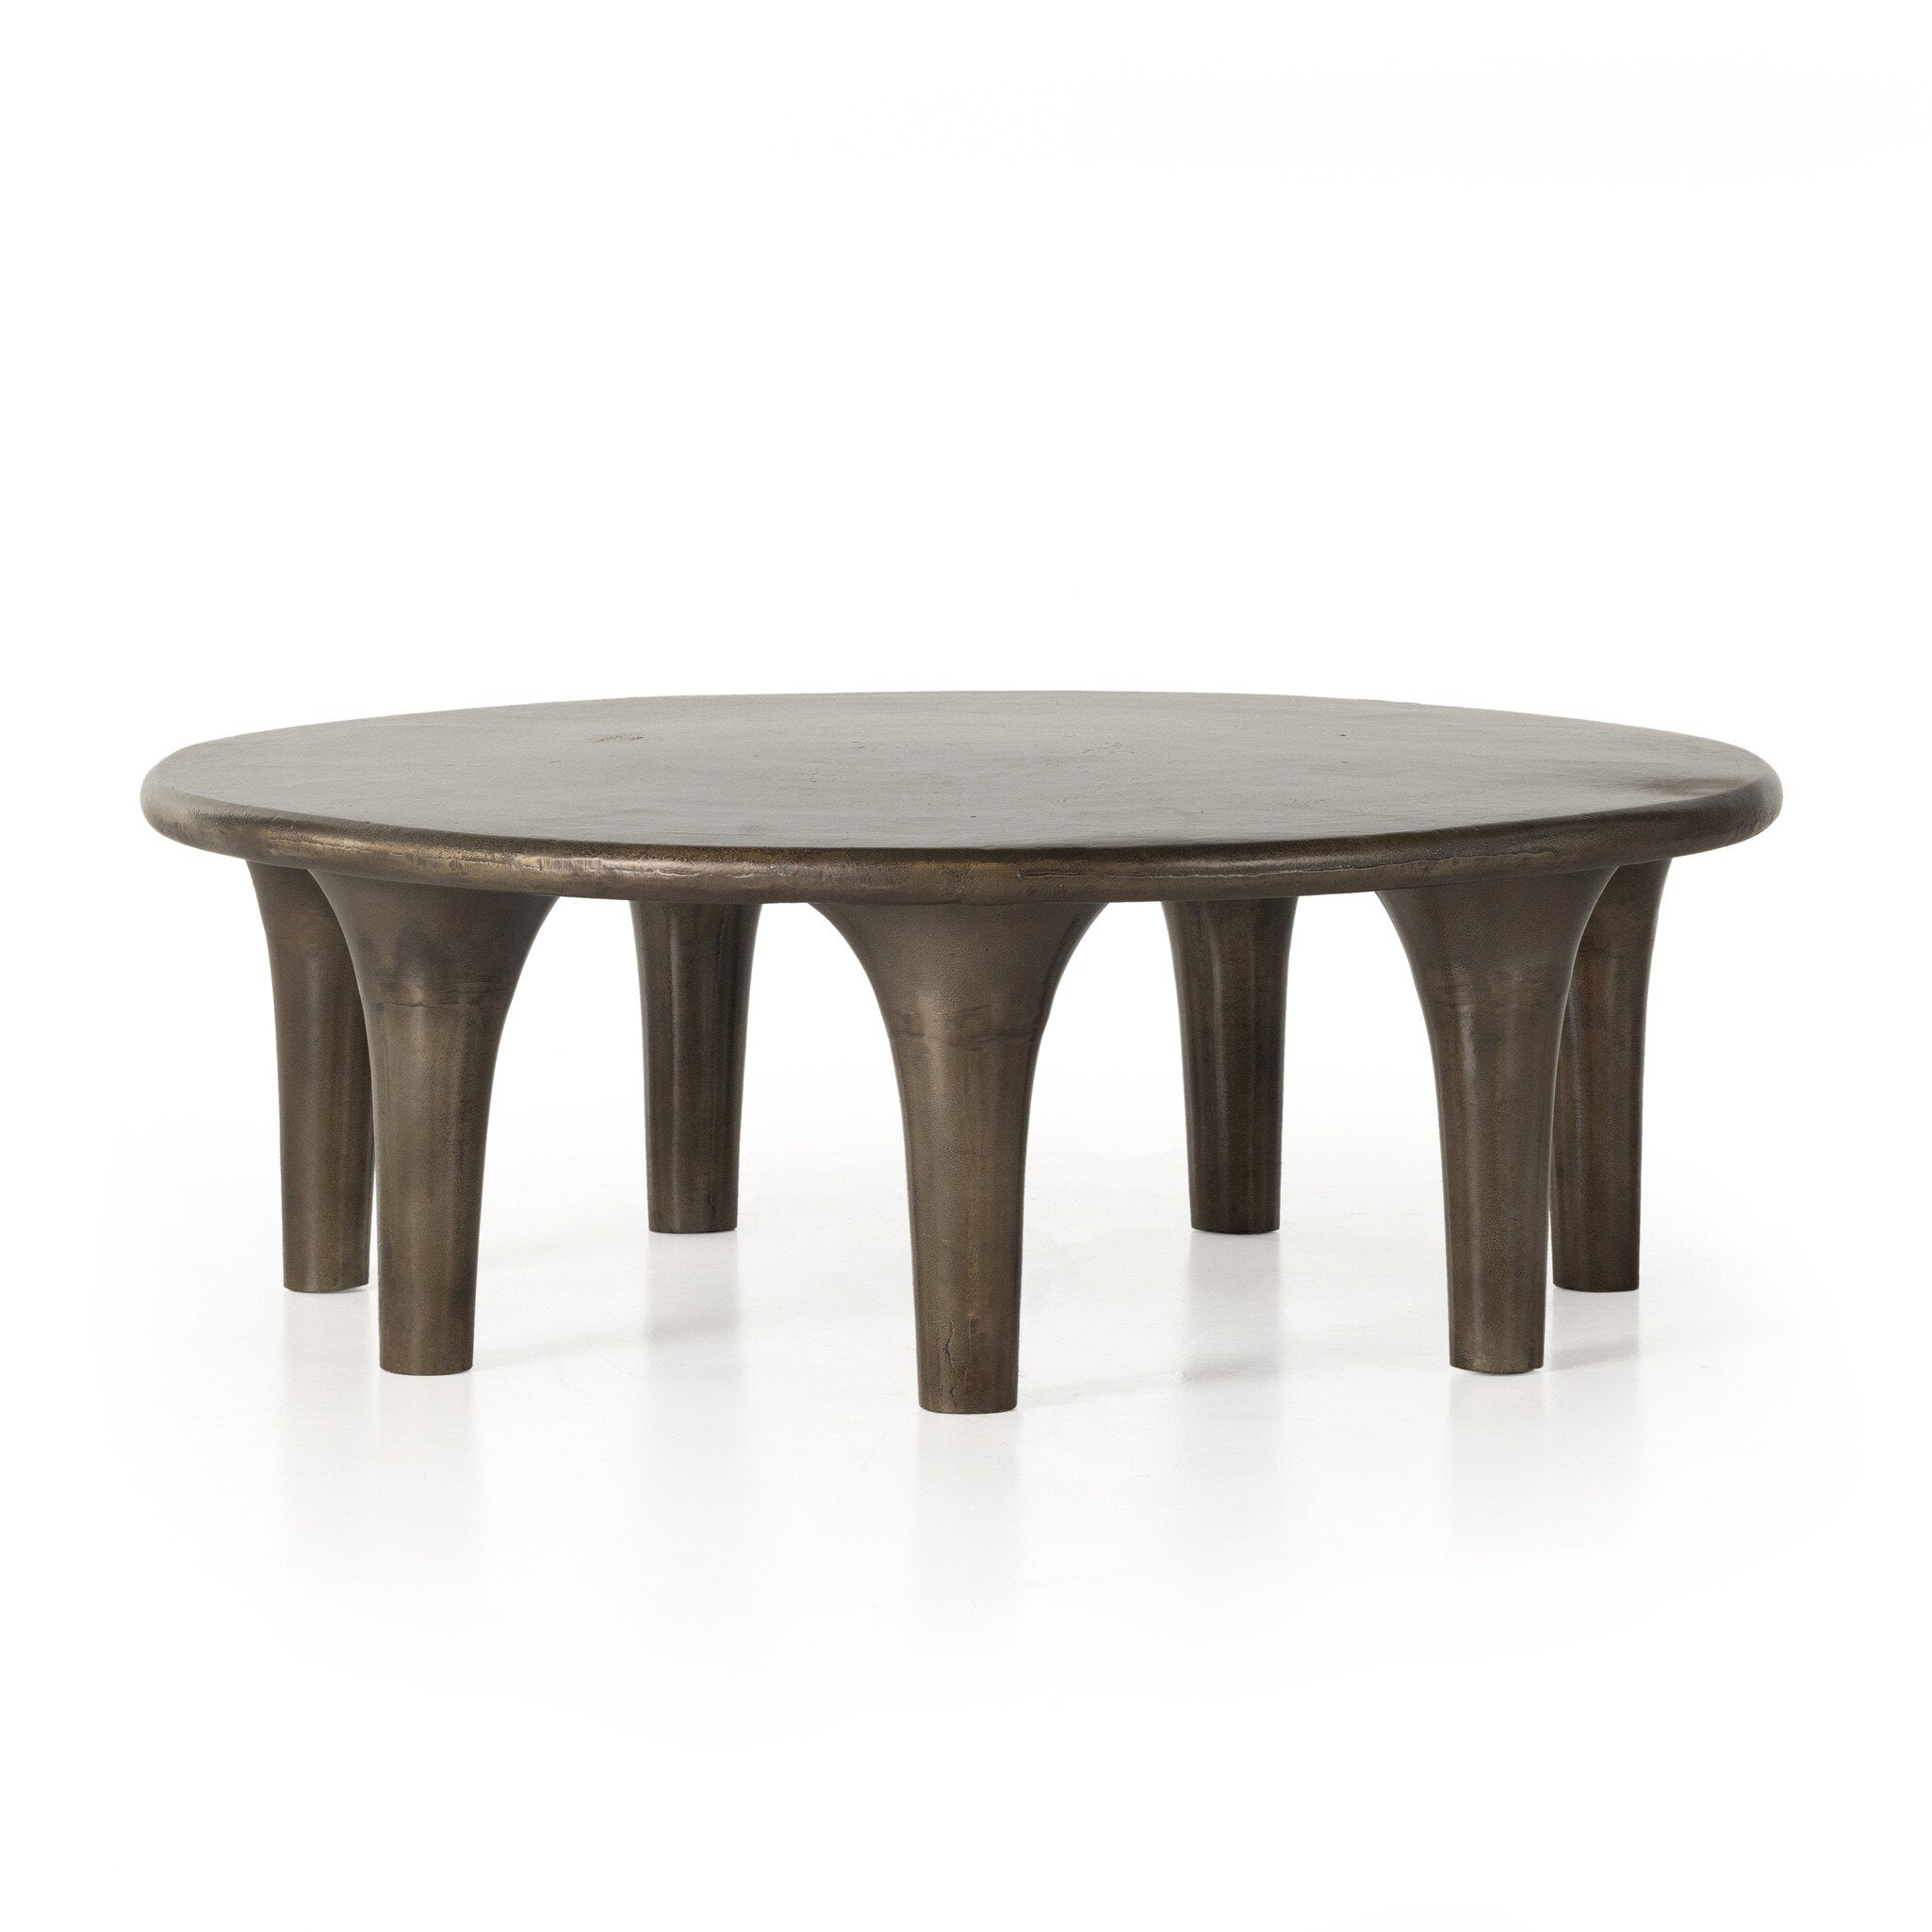 Kelden Coffee Table - Aged Bronze